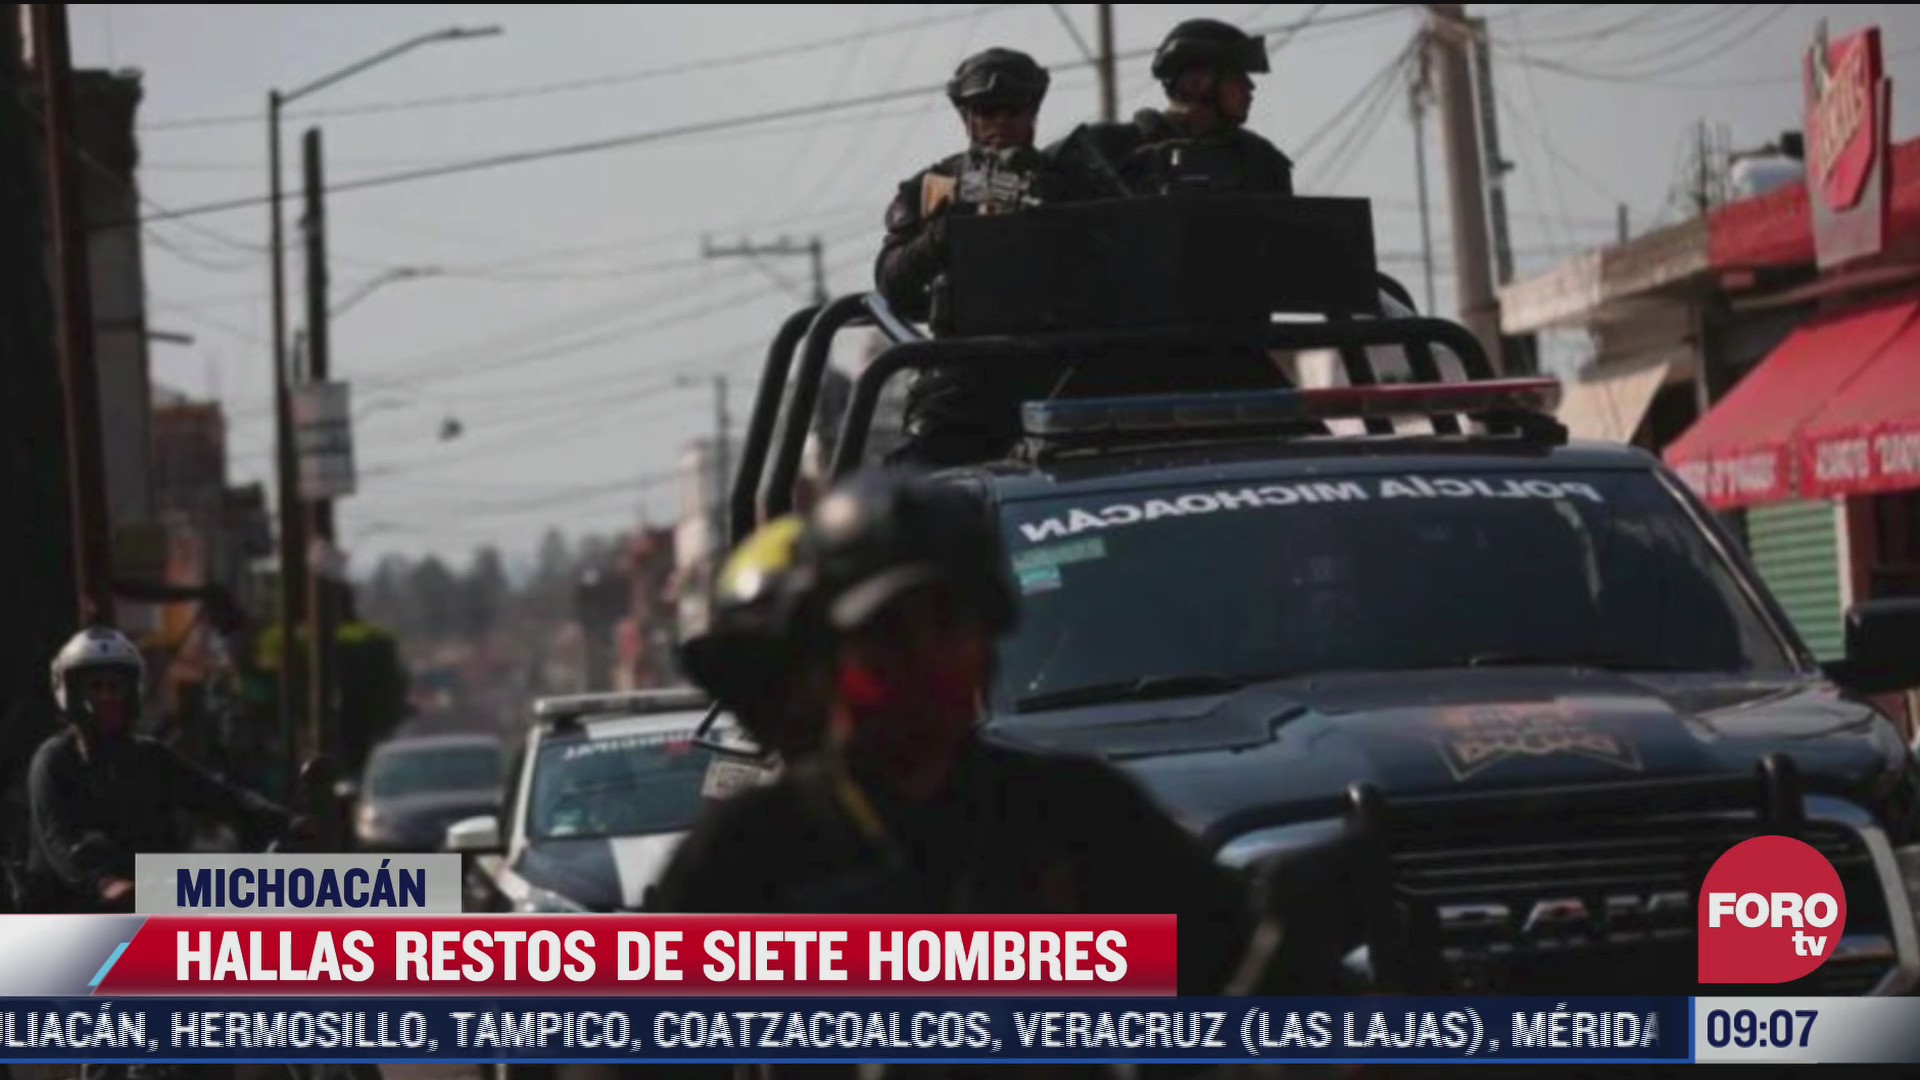 abandonan cuerpos desmembrados de 7 hombres dentro de taxi en michoacan